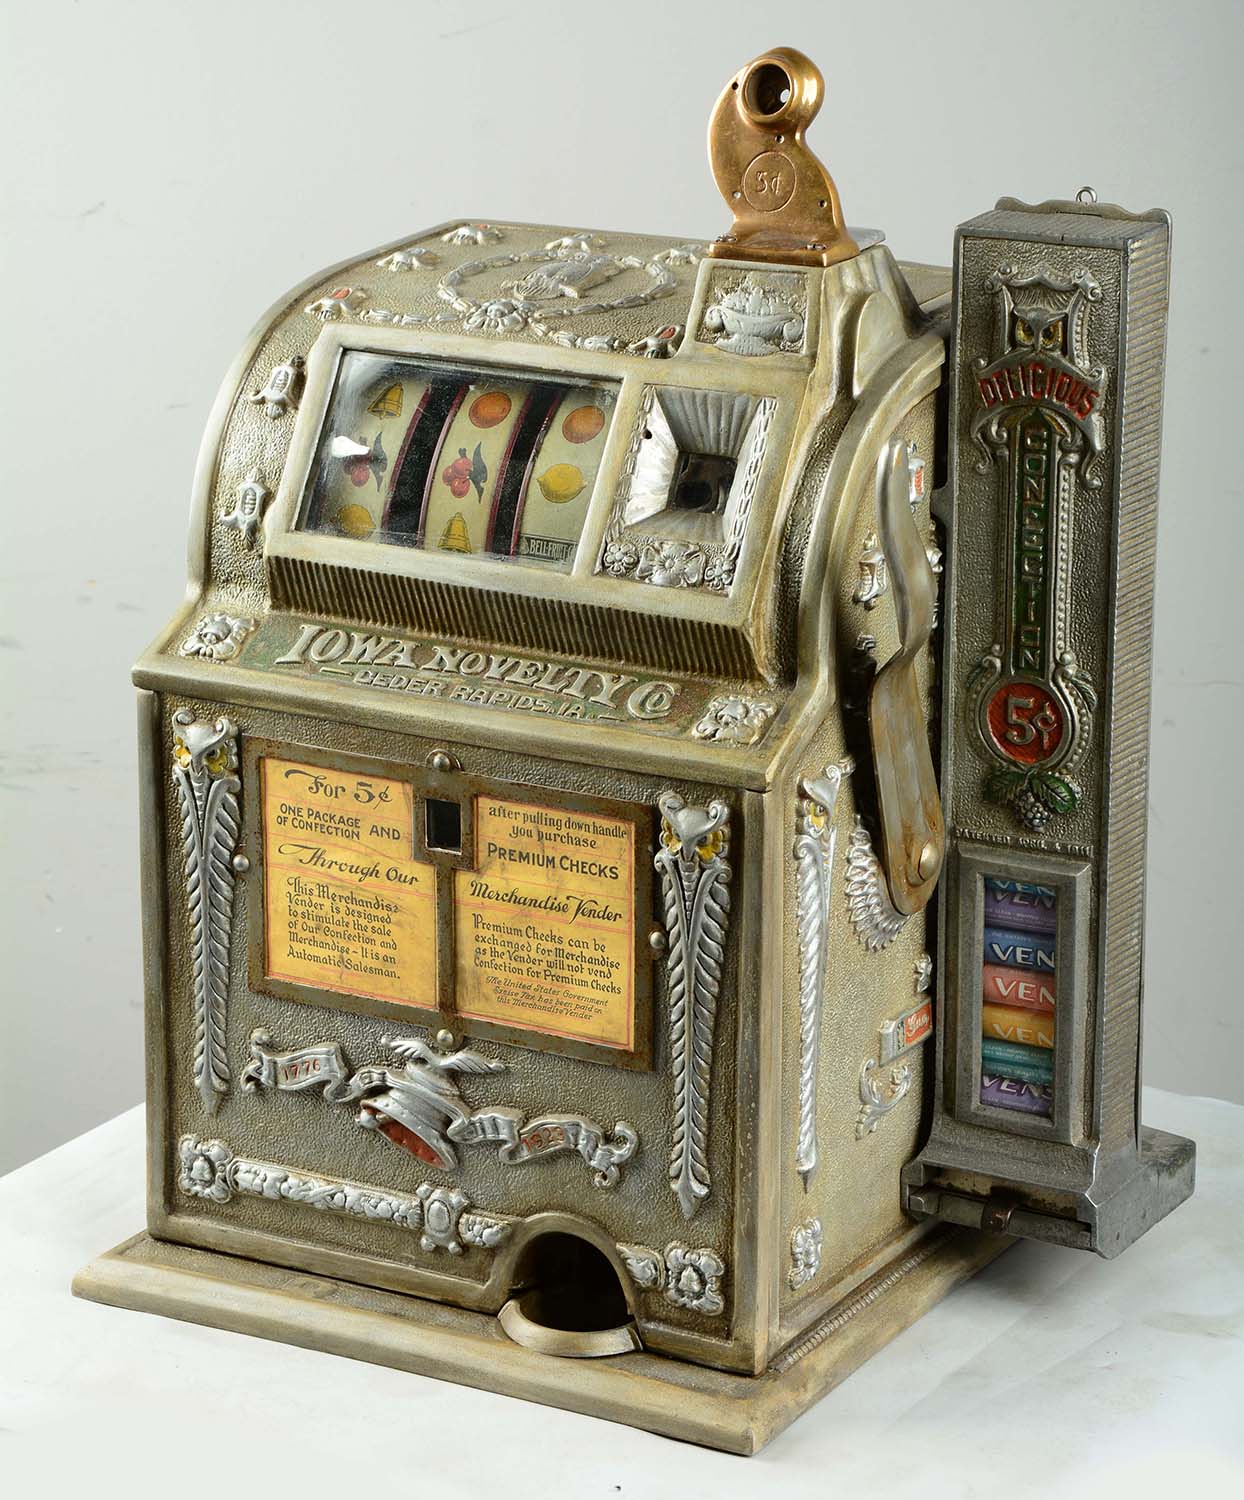 5¢ Mills Regular O.K. Mint Vender Slot Machine, Estimated at $3,500-4,500.